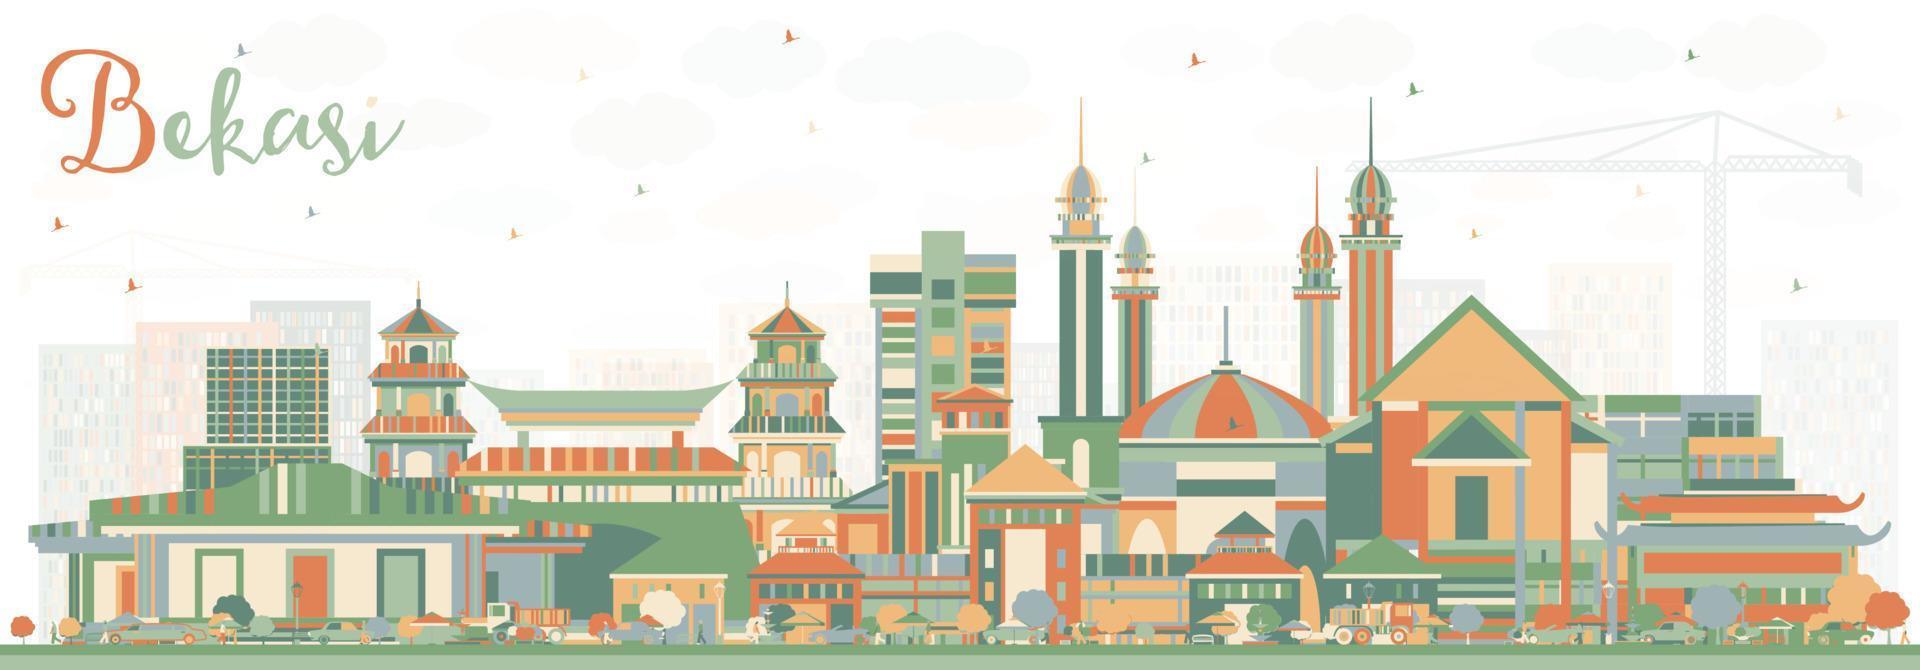 horizonte de la ciudad de bekasi indonesia con edificios de color. vector